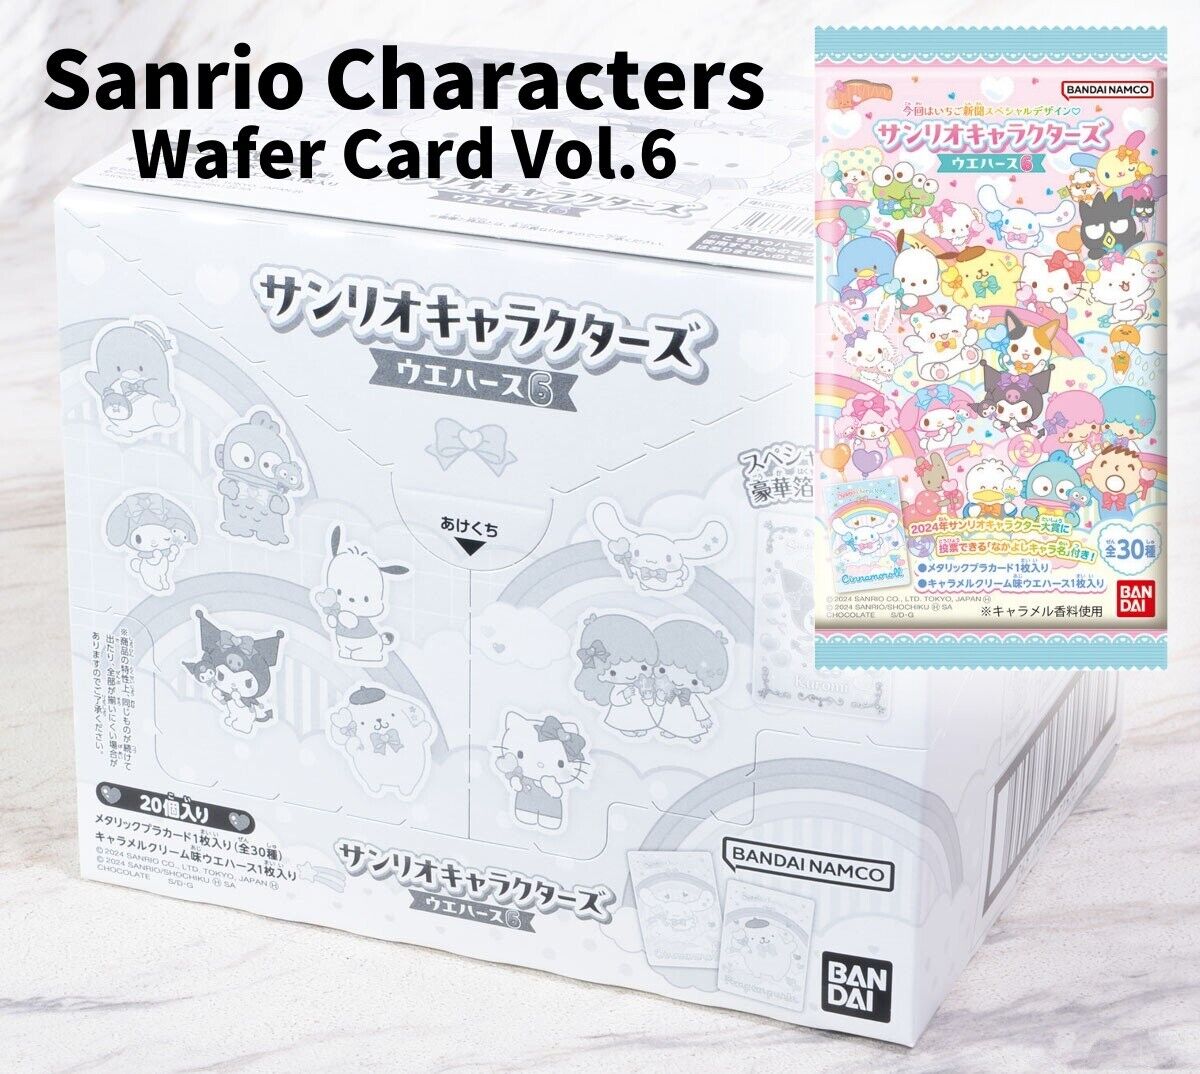 Sanrio Characters Wafer Card Vol.6 Box 20 Pieces Packs Set BANDAI Japan New